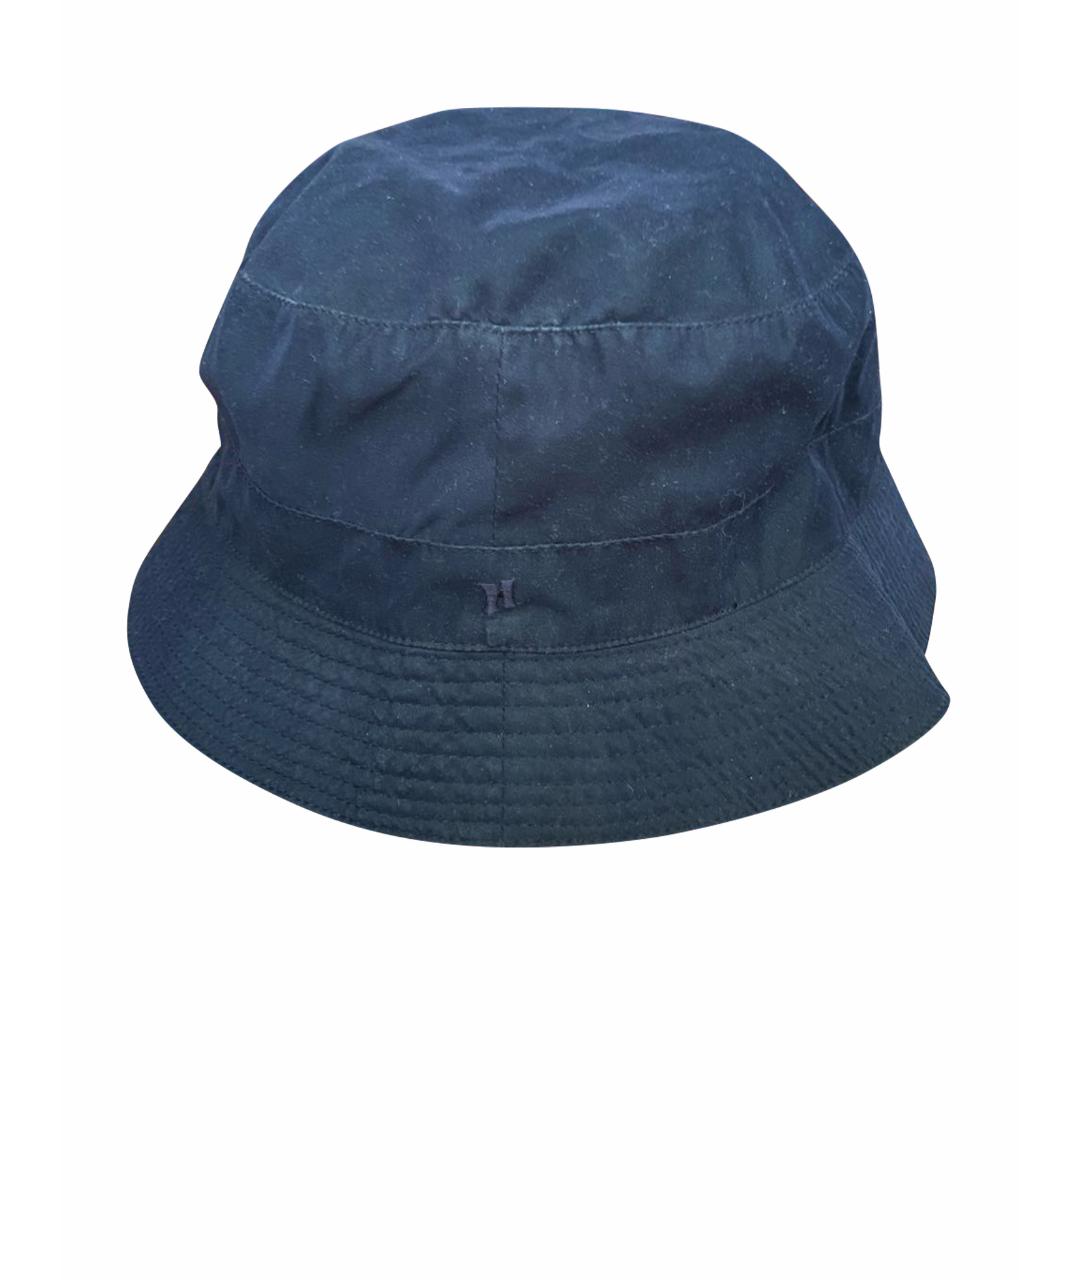 HERMES PRE-OWNED Синяя хлопковая шляпа, фото 1